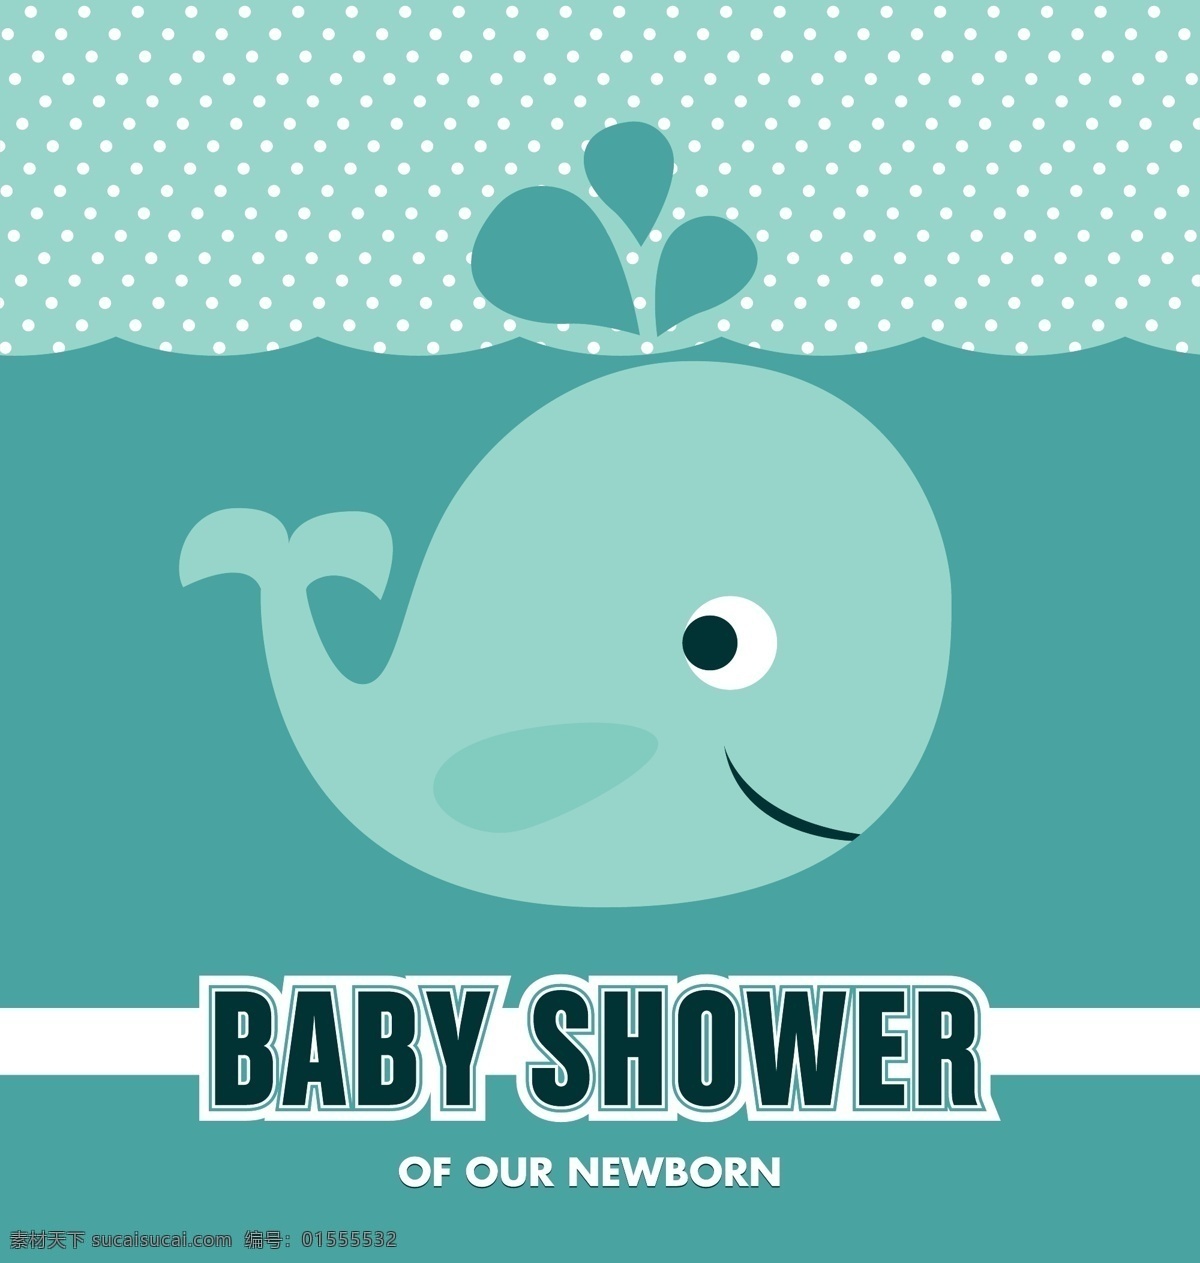 婴儿 洗澡 邀请 背景 卡片 模板 婴儿淋浴 请柬 墙纸 颜色 庆祝 儿童 丰富多彩 新的 婴儿的背景 公告 鲸鱼 淋浴